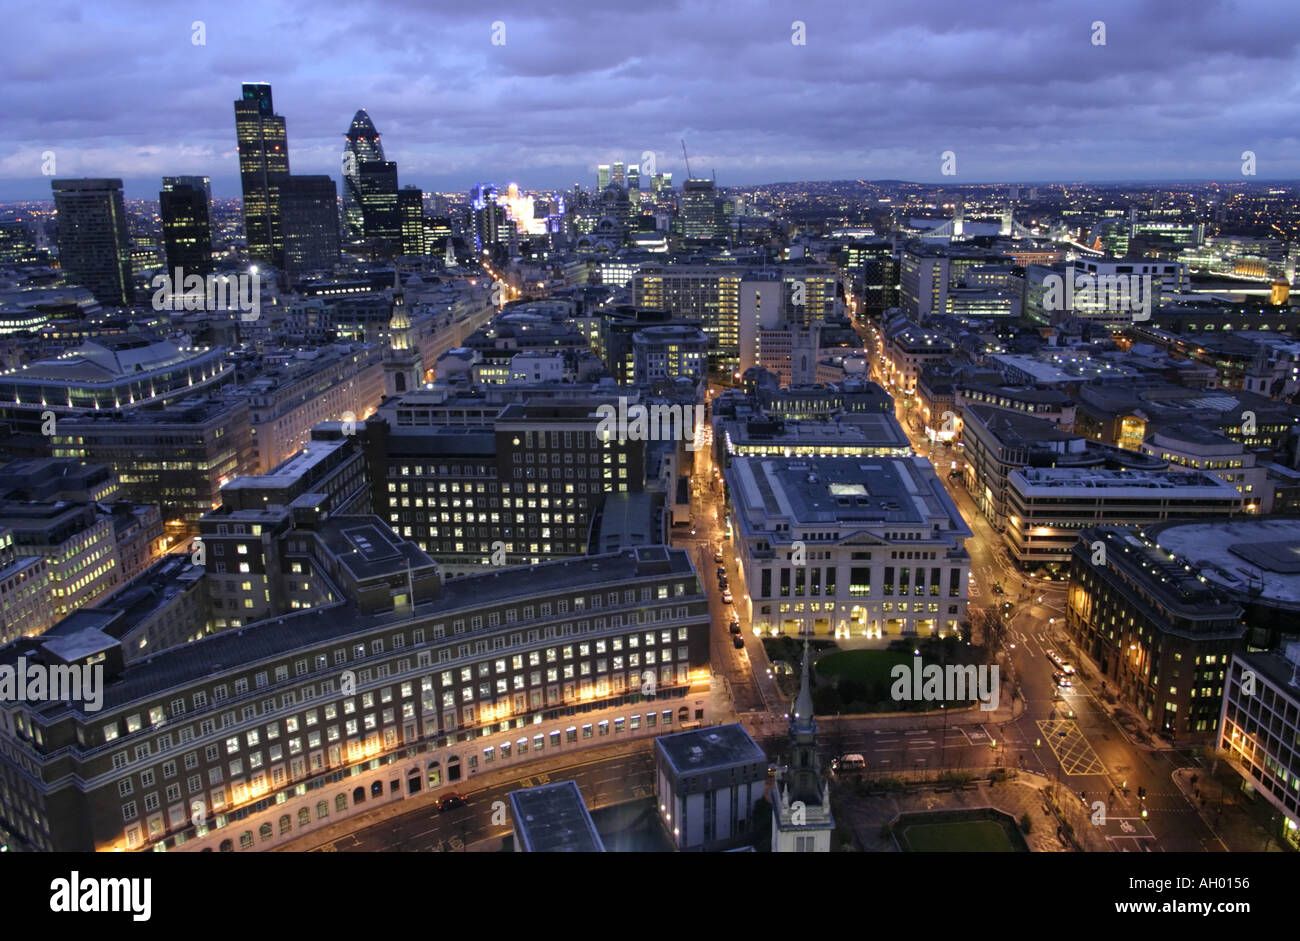 Voir à l'Est de la ville de London Financial district Angleterre Grande-bretagne Royaume-Uni UK Banque D'Images